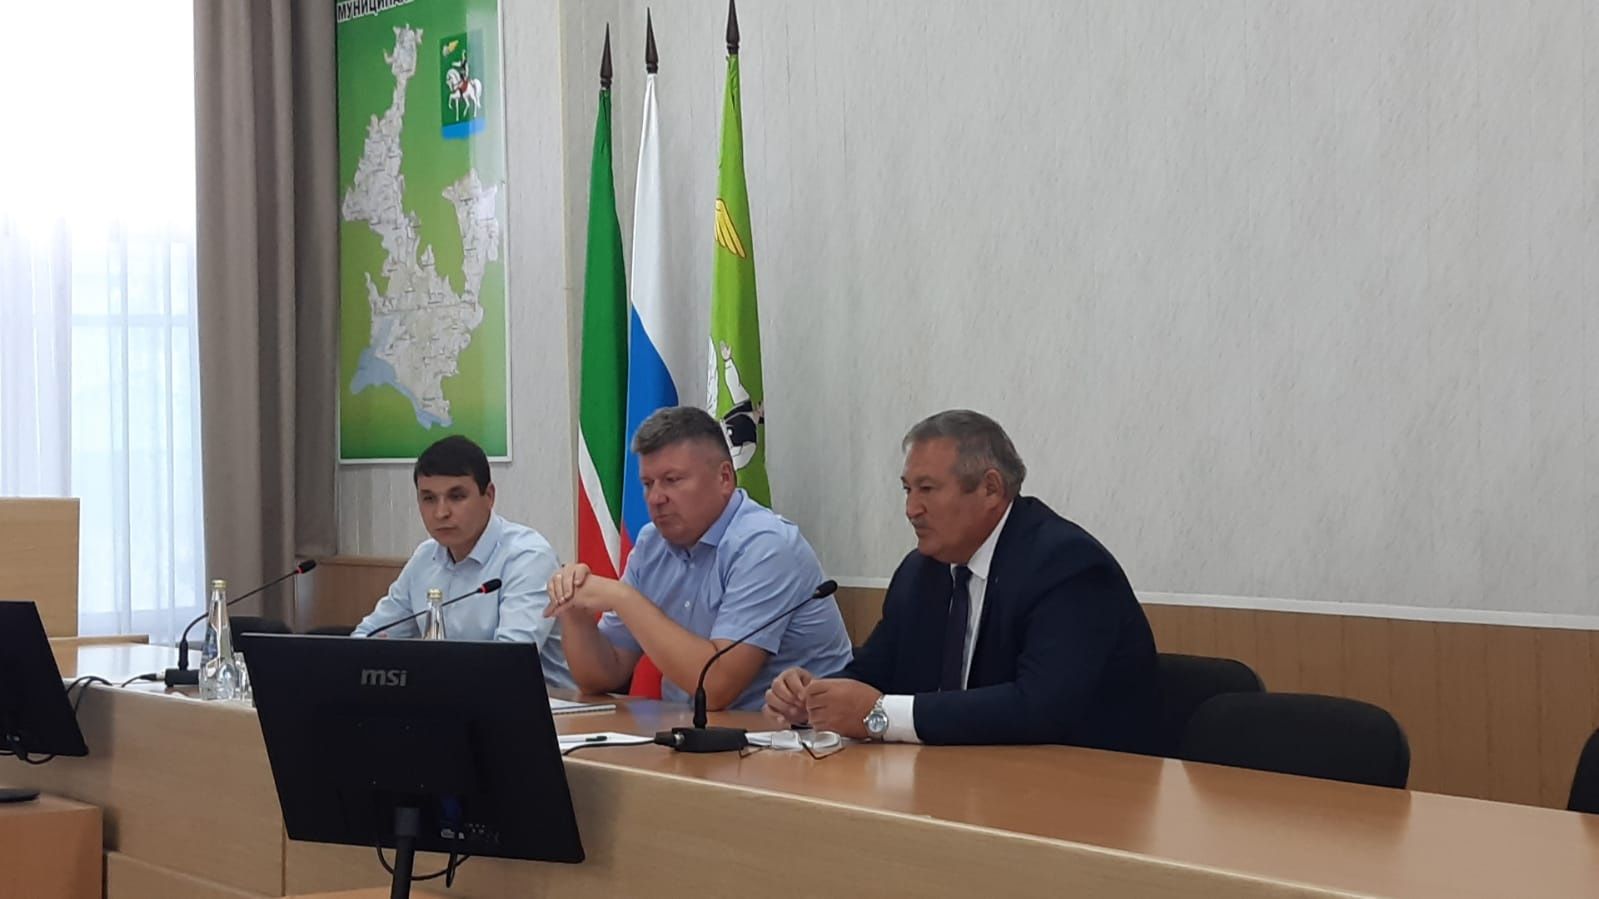 Агрыз посетил заместитель председателя Государственного комитета по тарифам РТ Дмитрий Сапожников